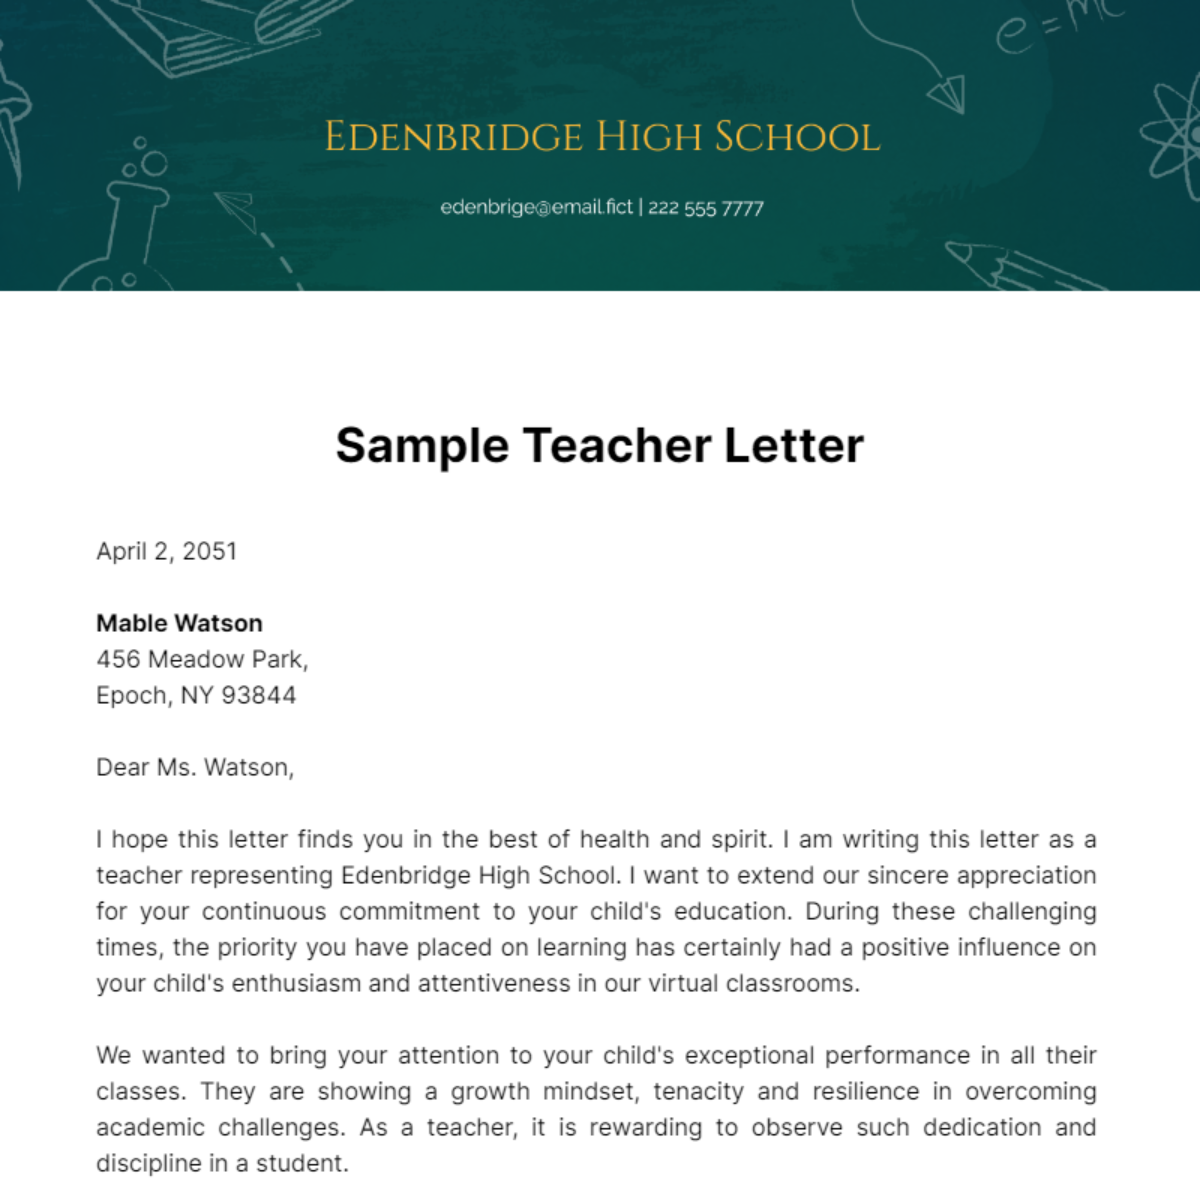 Sample Teacher Letter Template